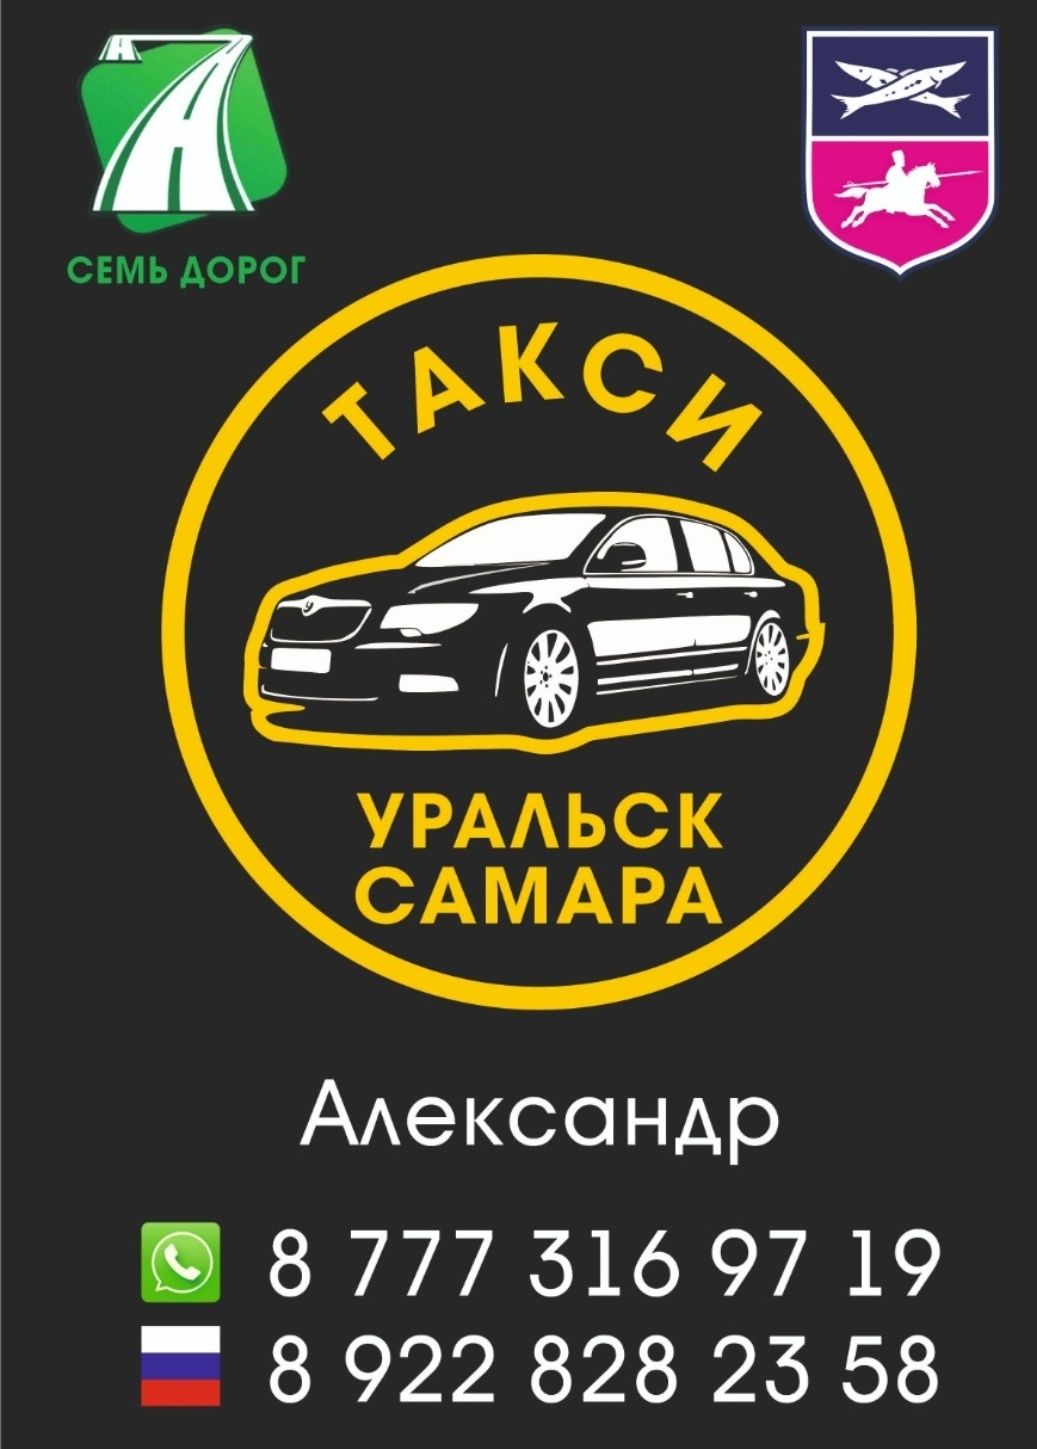 Такси Уральск Самара Уральск